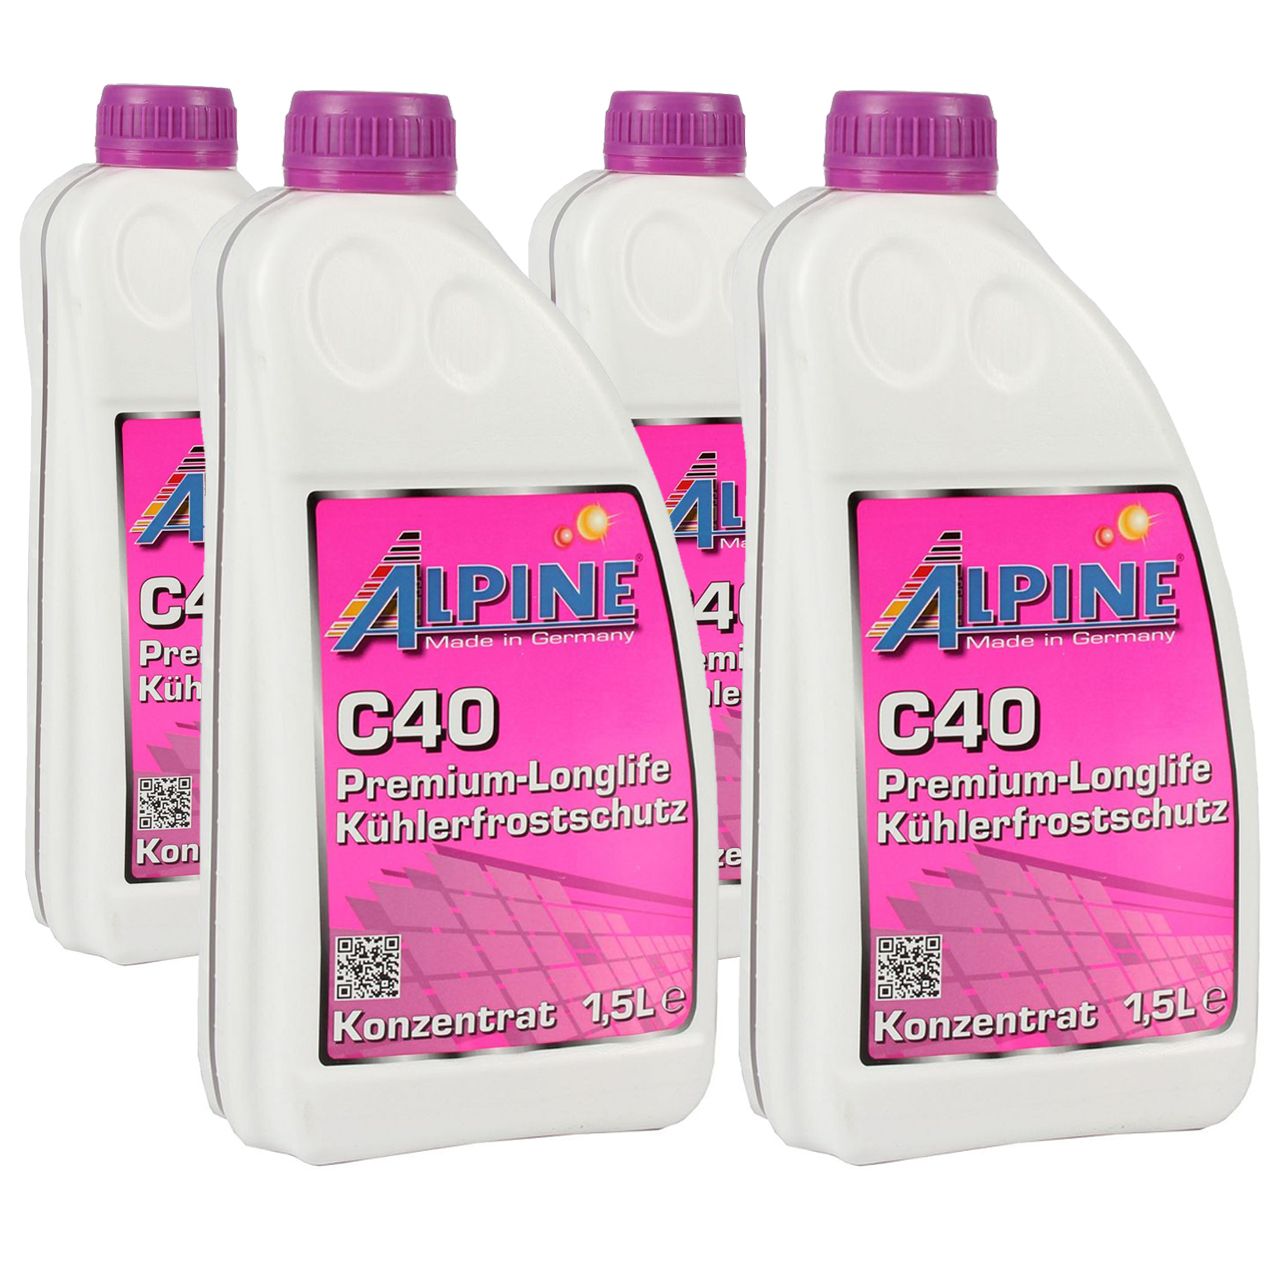 6L 6 Liter ALPINE Frostschutz Kühler Kühlerfrostschutz Konzentrat C40 G40